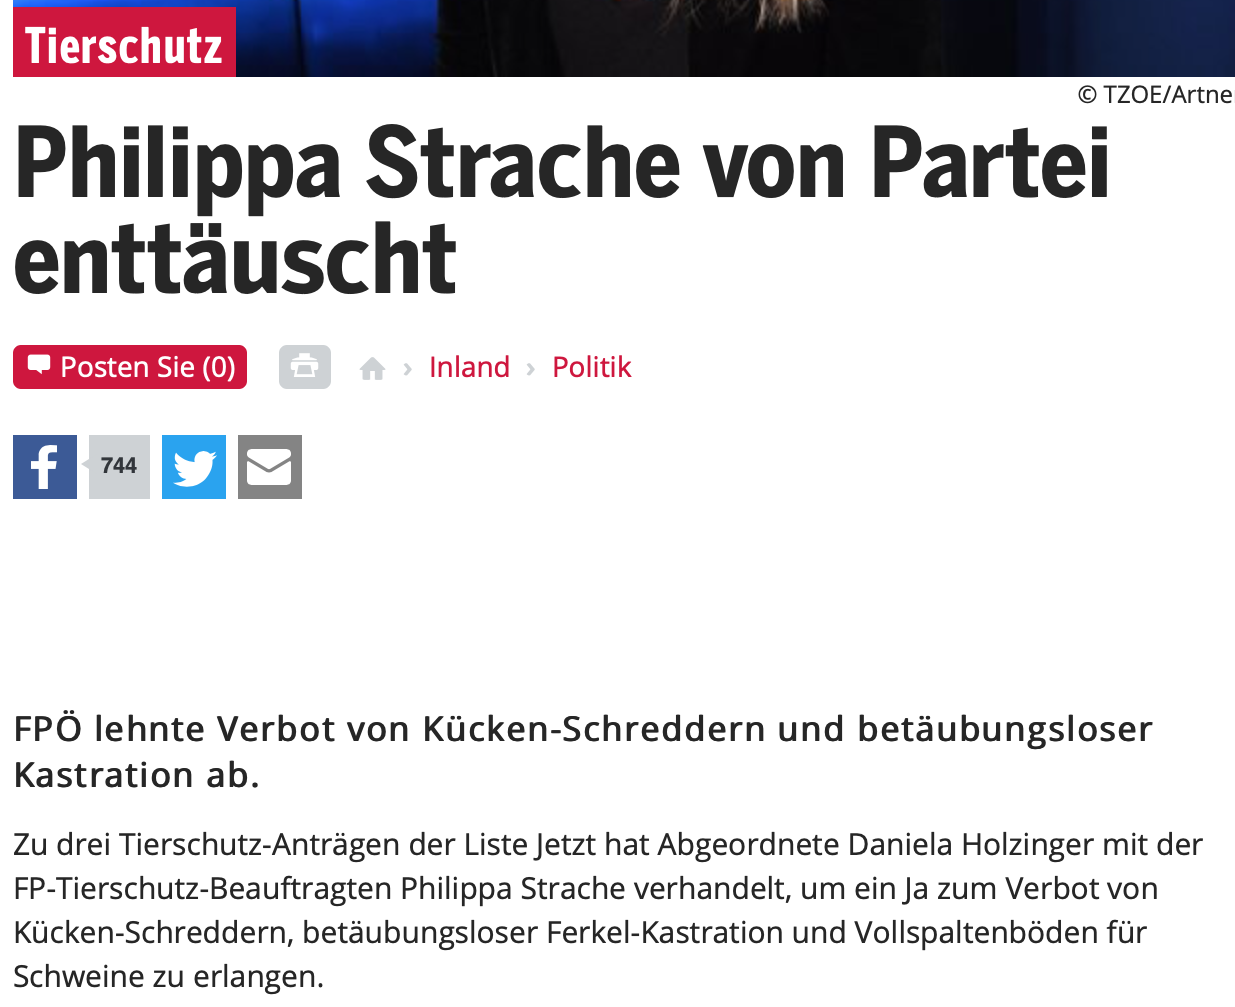 Philippa Strache in oe24.at 14.6.19: "von Partei enttäuscht"